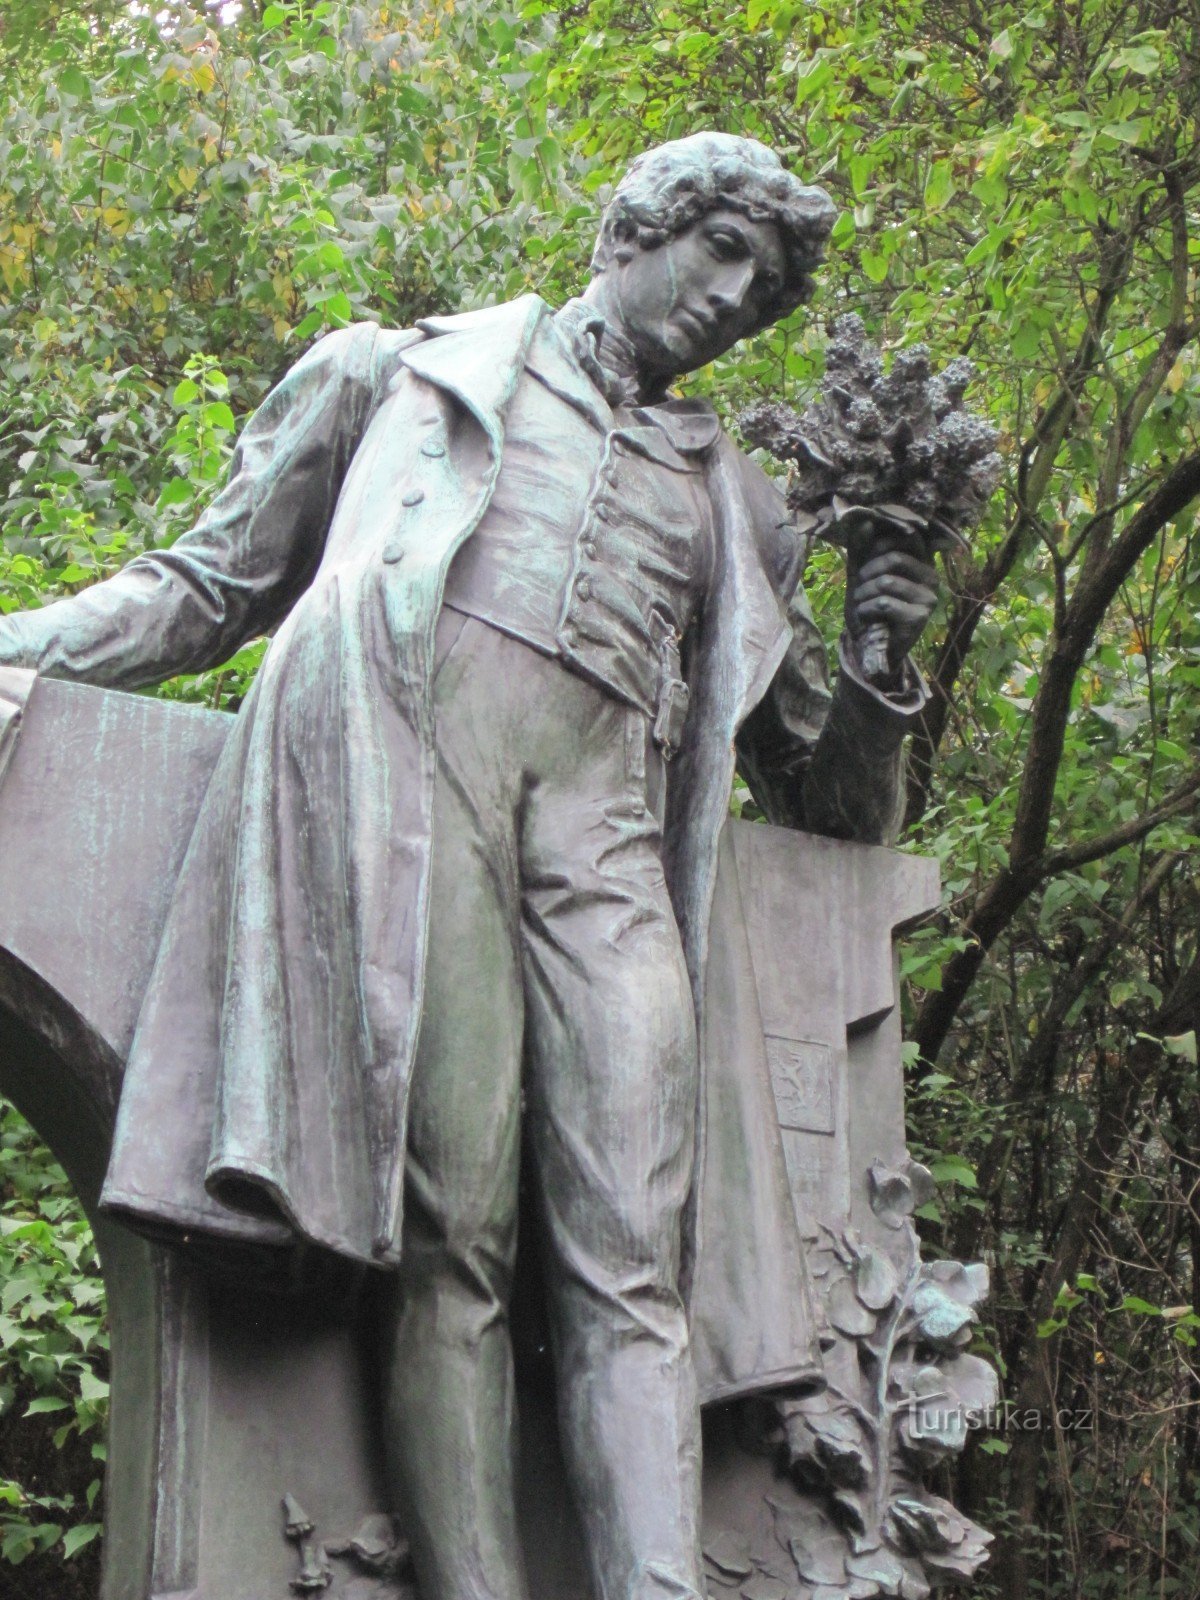 Estátua de KH Mácha em Petřín